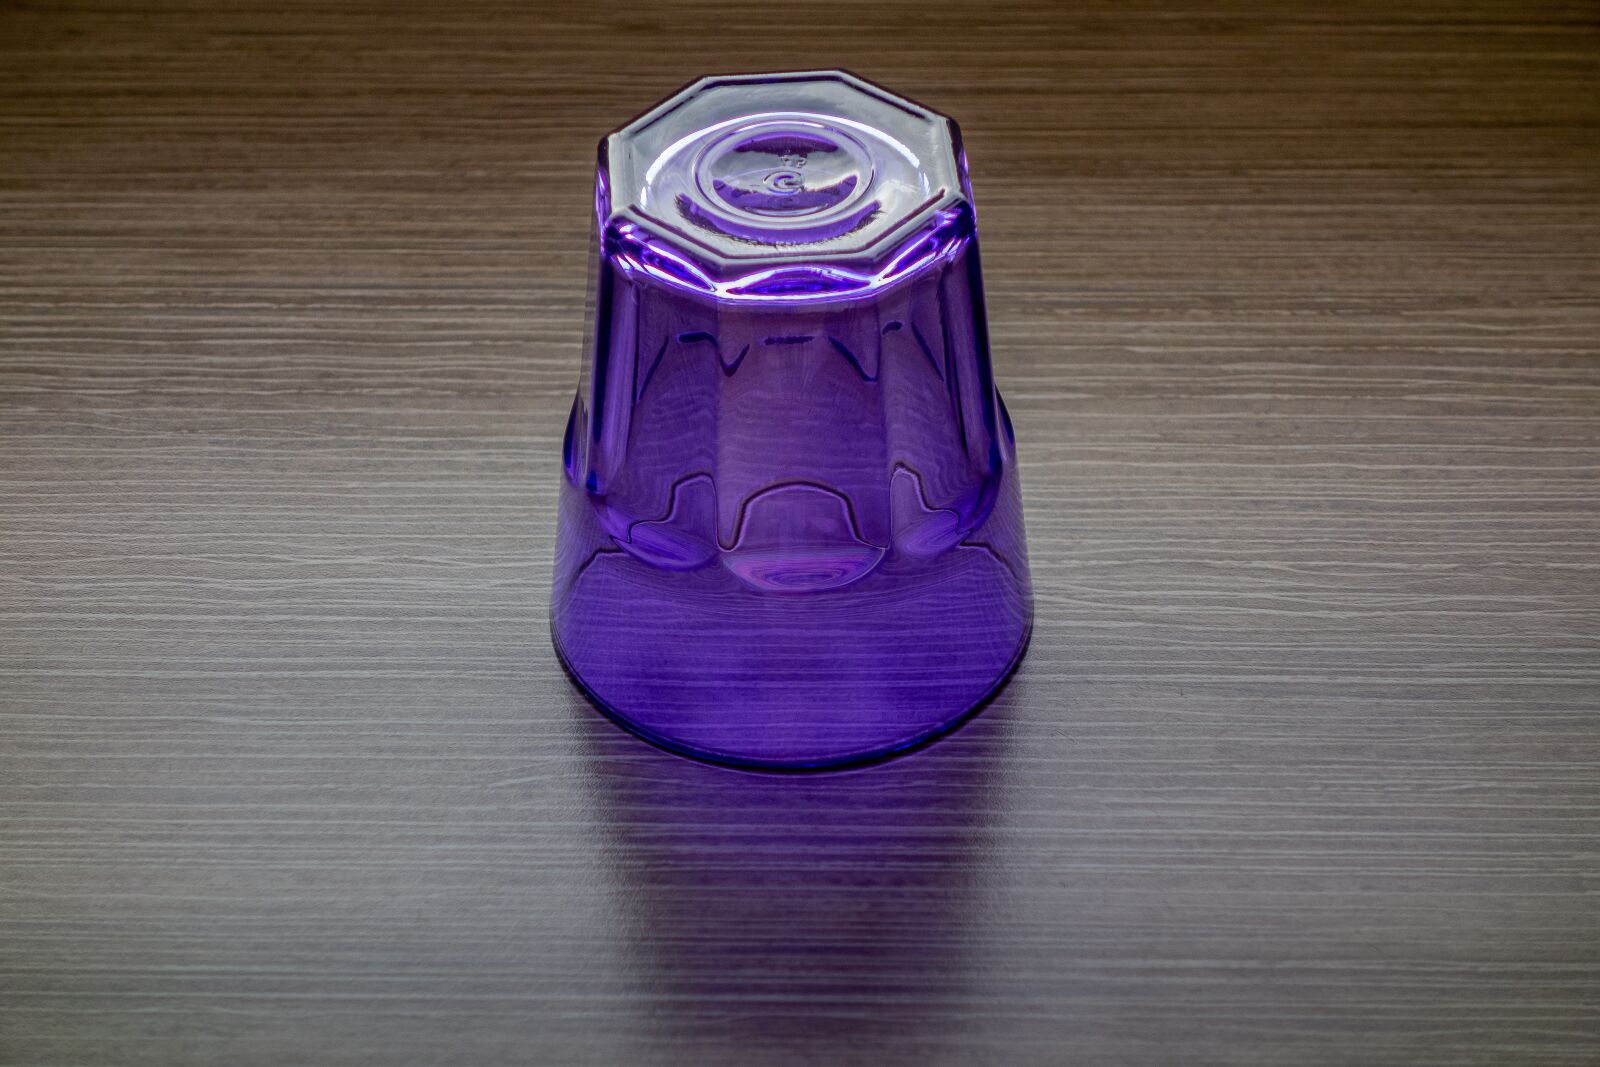 Sony Cyber-shot DSC-RX100 sample photo. Glass, violet, light photography